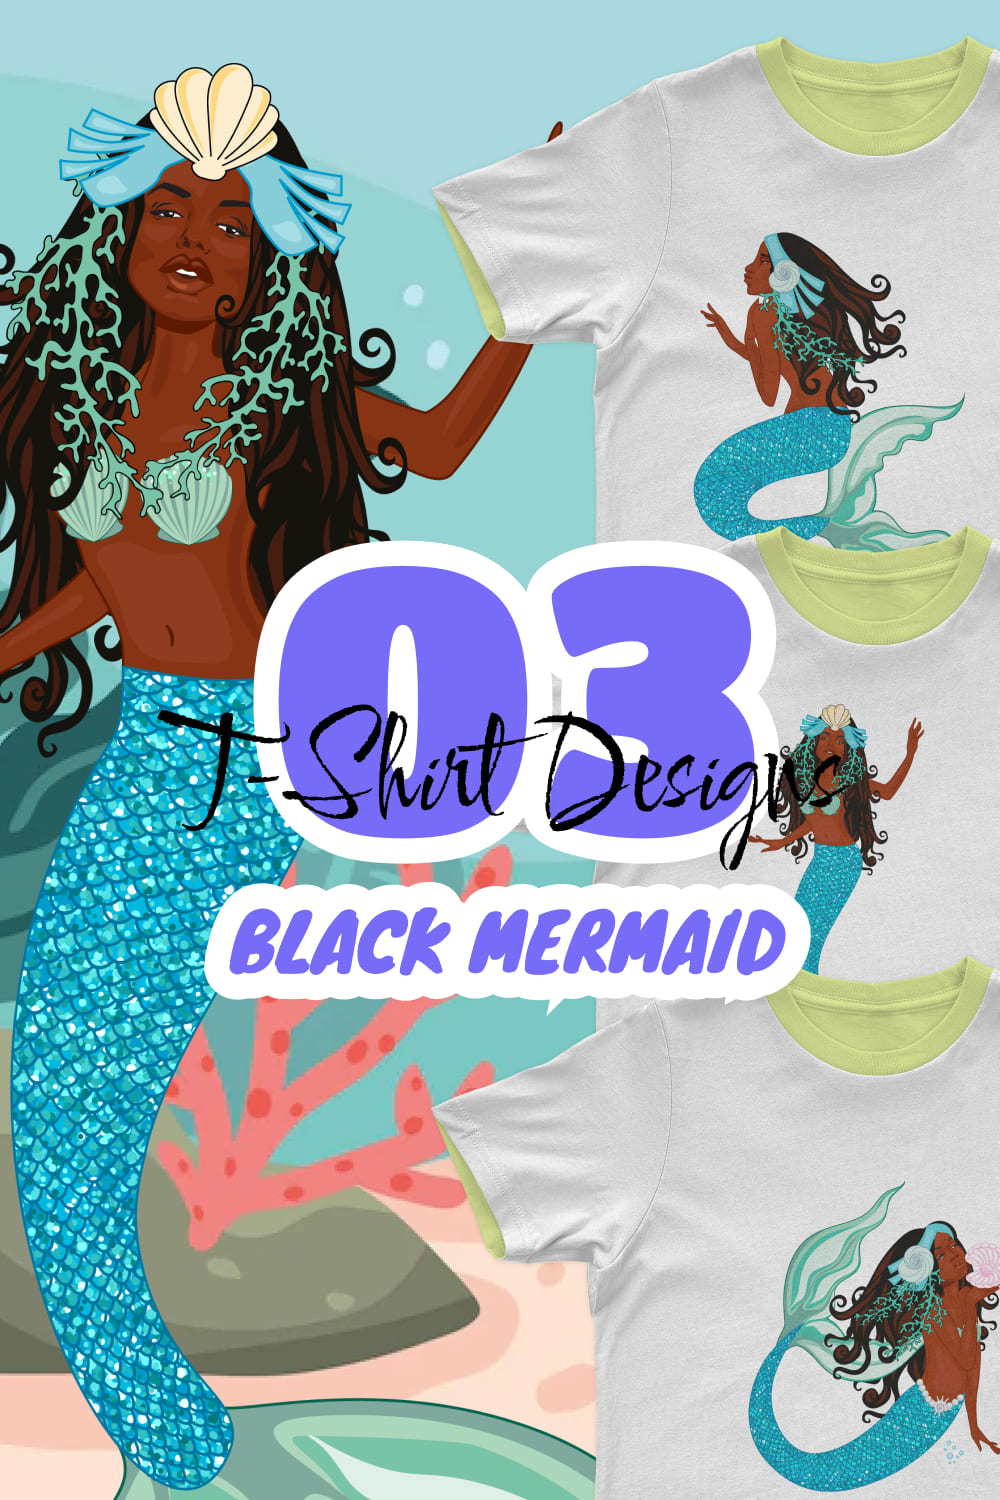 Black mermaid images of pinterest.